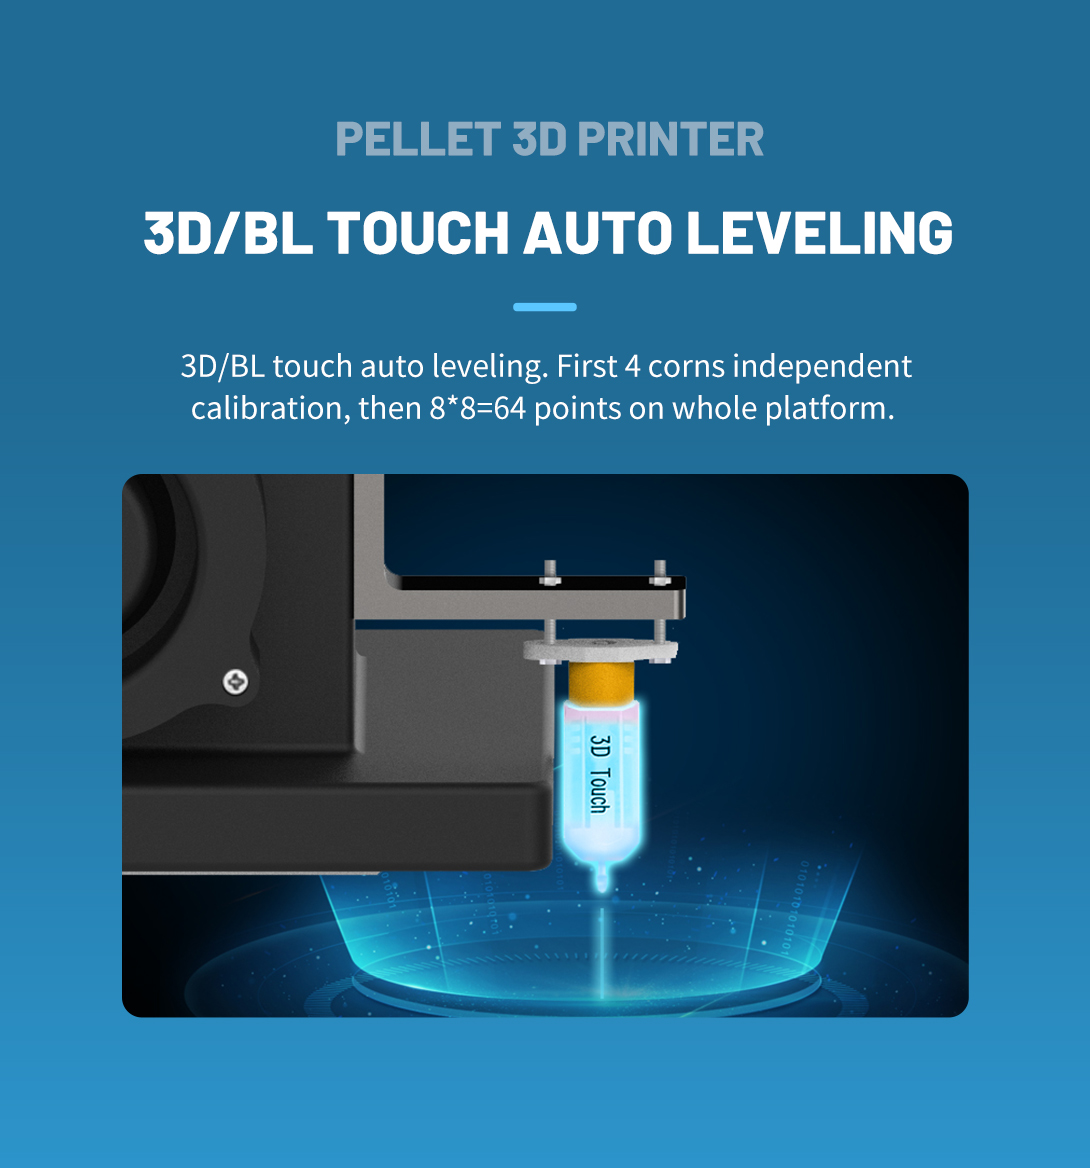 particle 3d printer